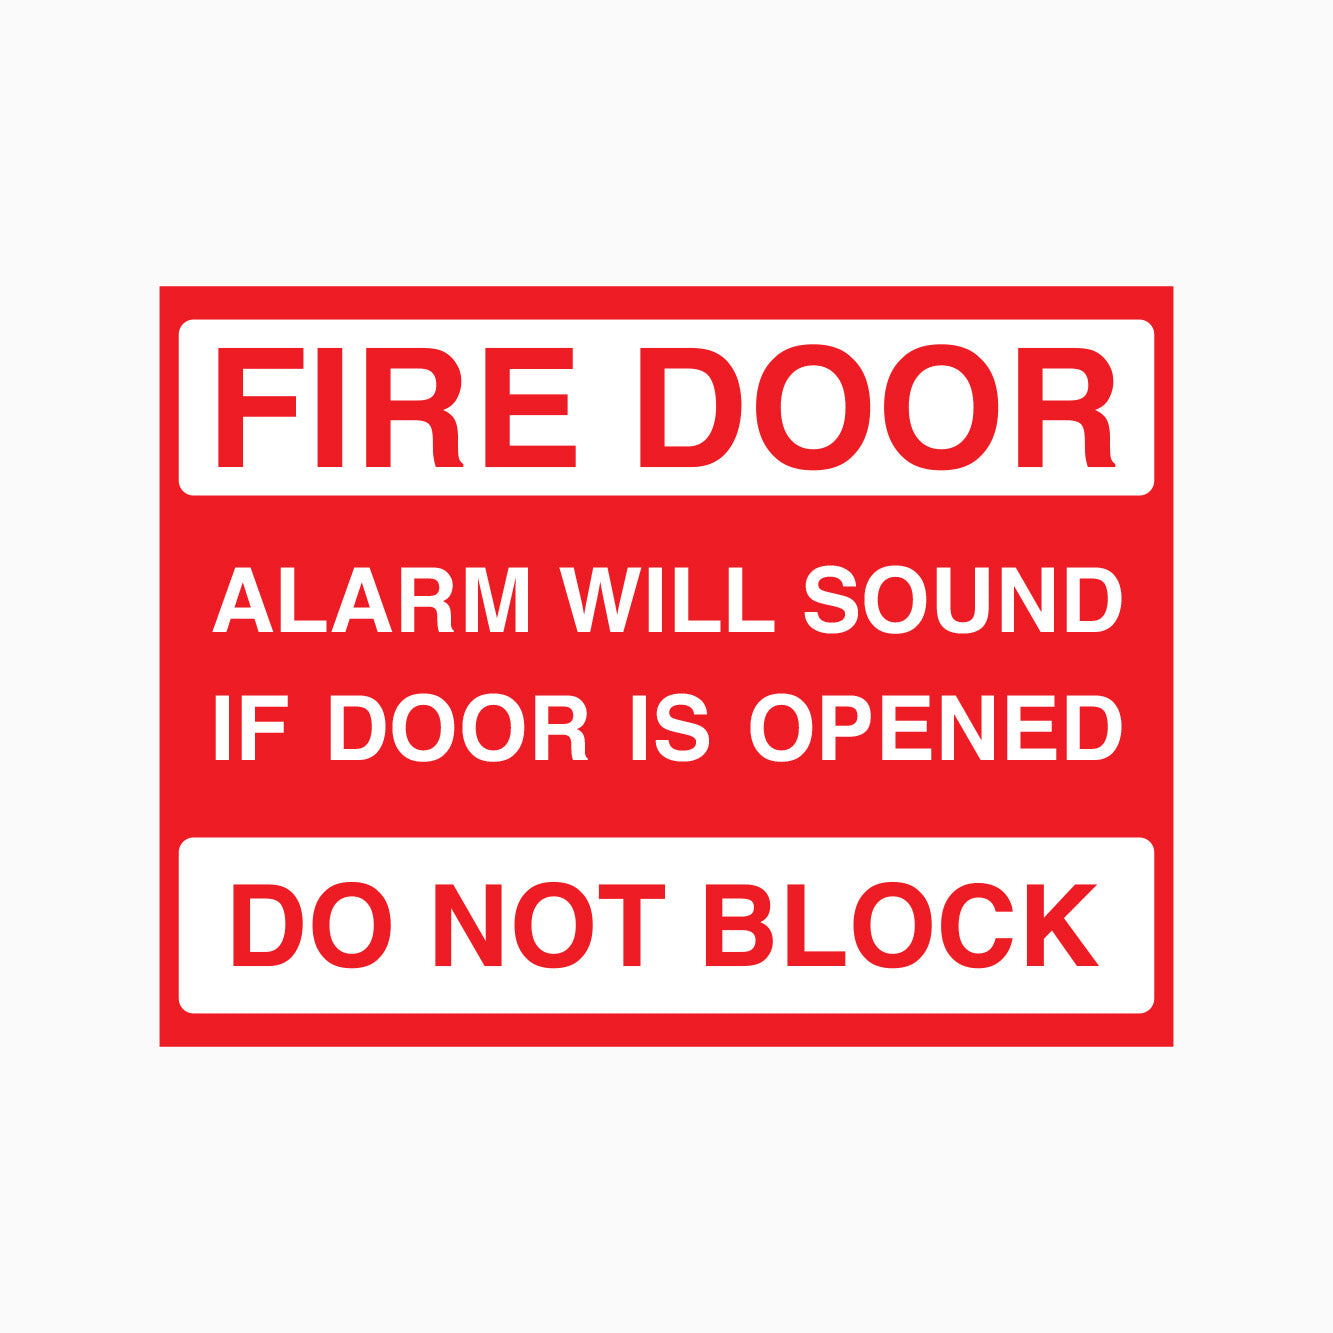 FIRE DOOR SIGN - ALARM WILL SOUND IF DOOR IS OPENED - DO NOT BLOCK SIGN